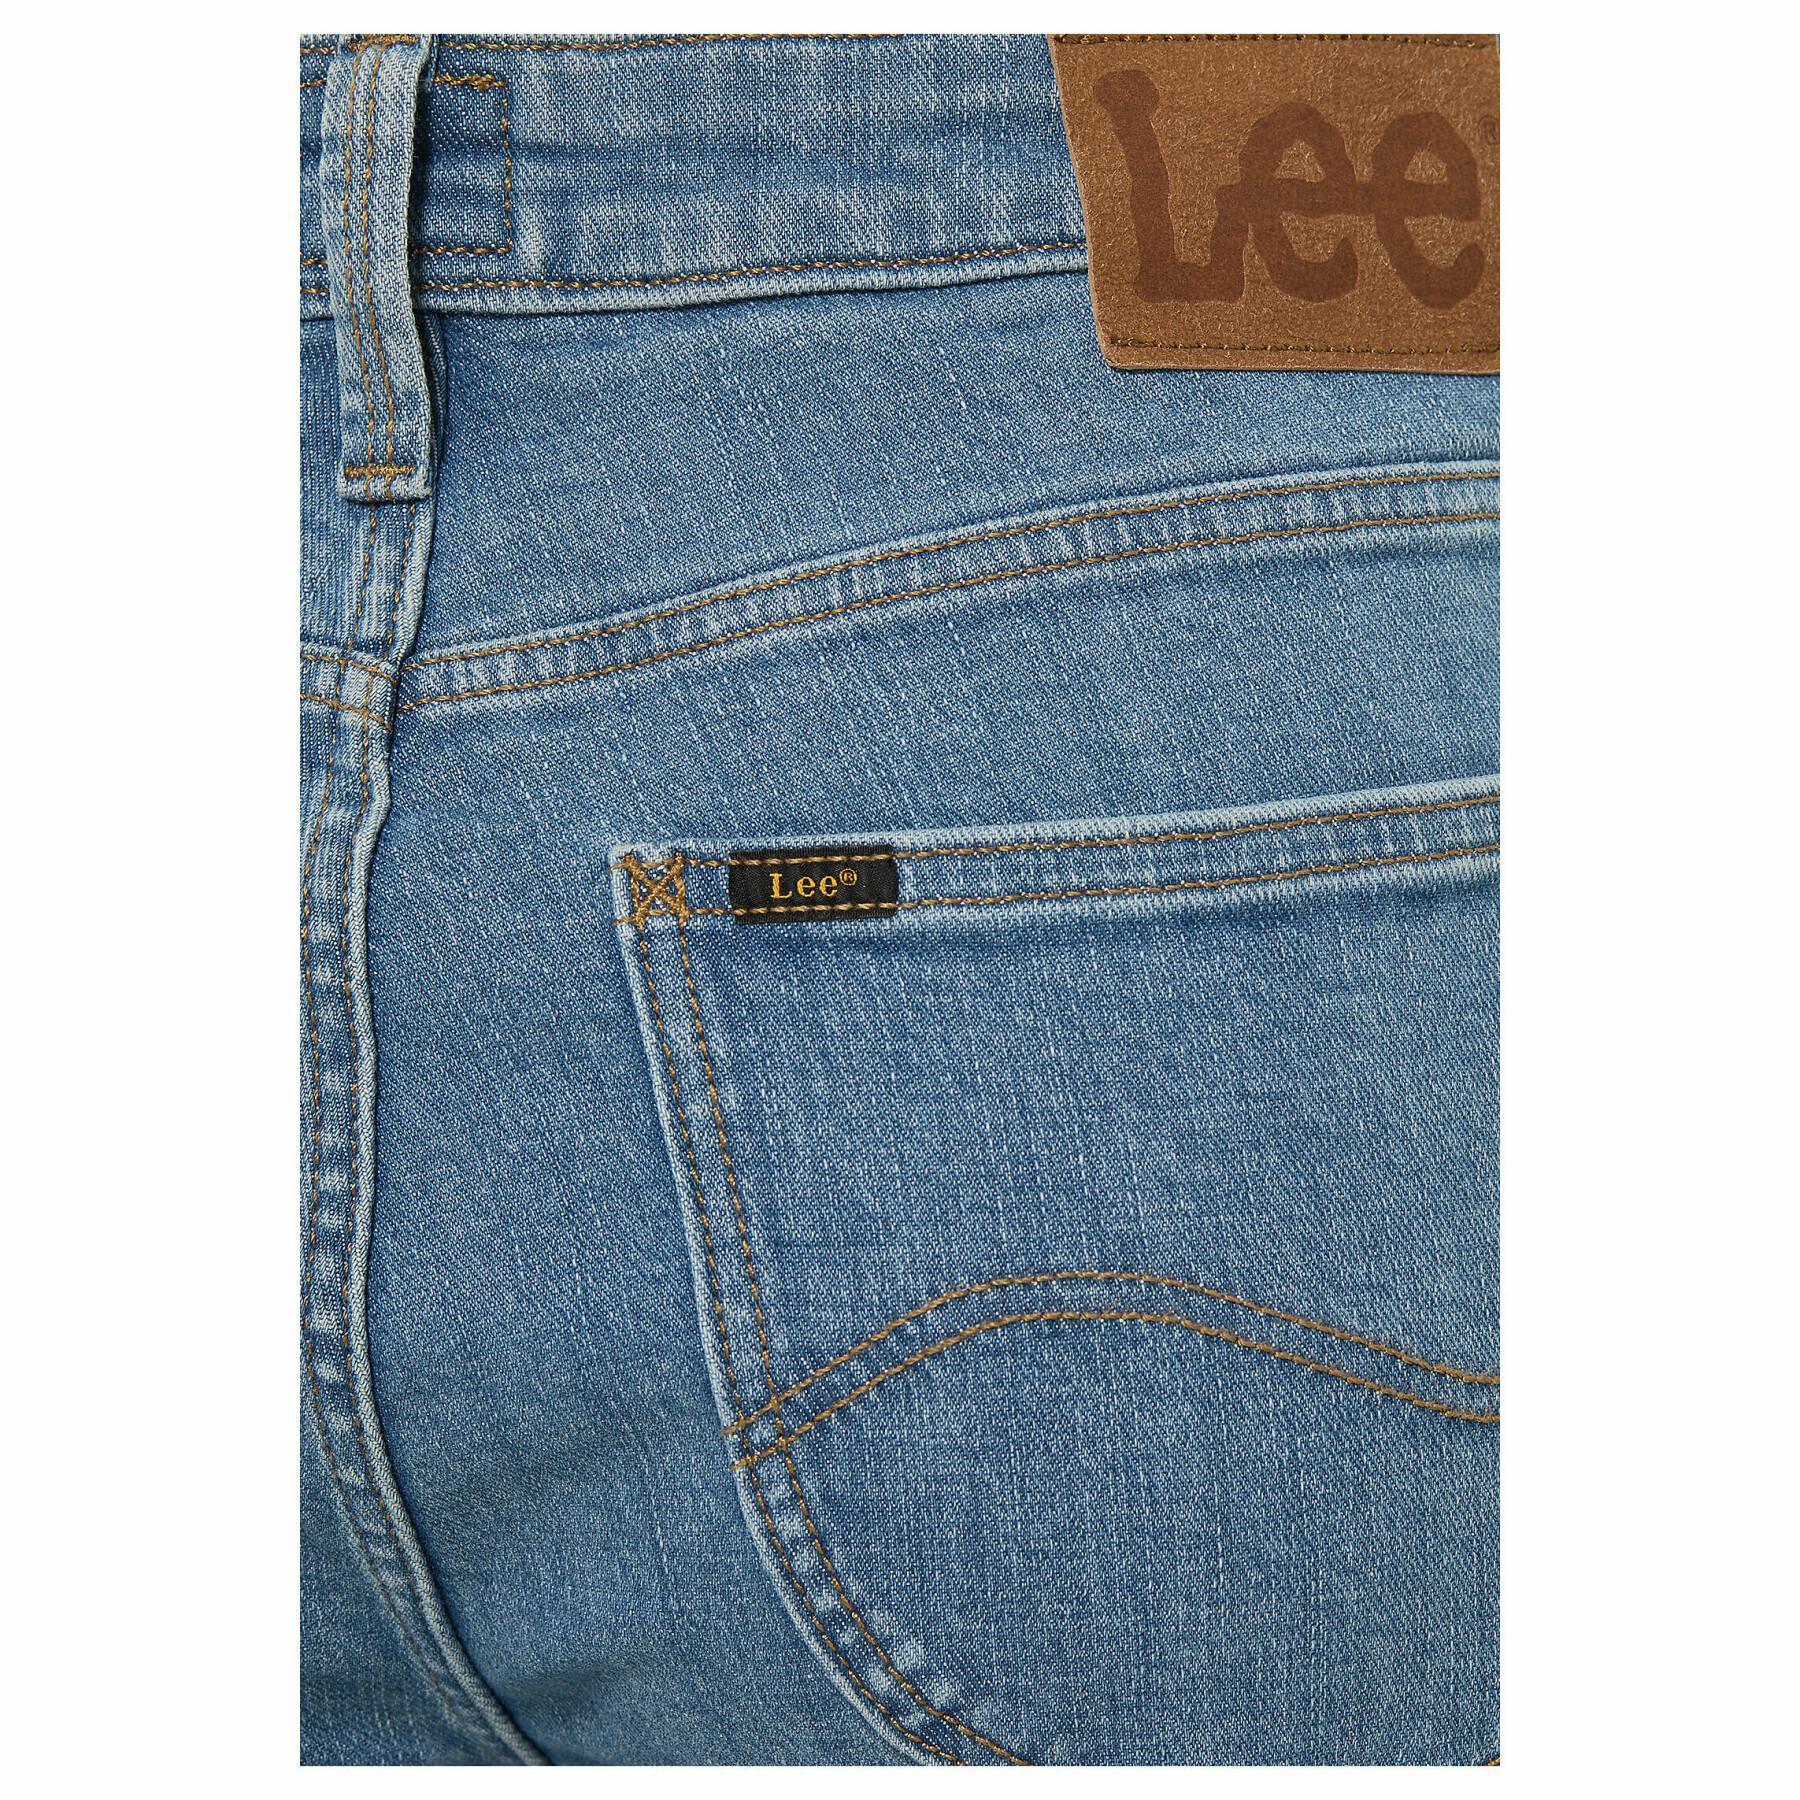 Women's high waist jeans Lee Scarlett